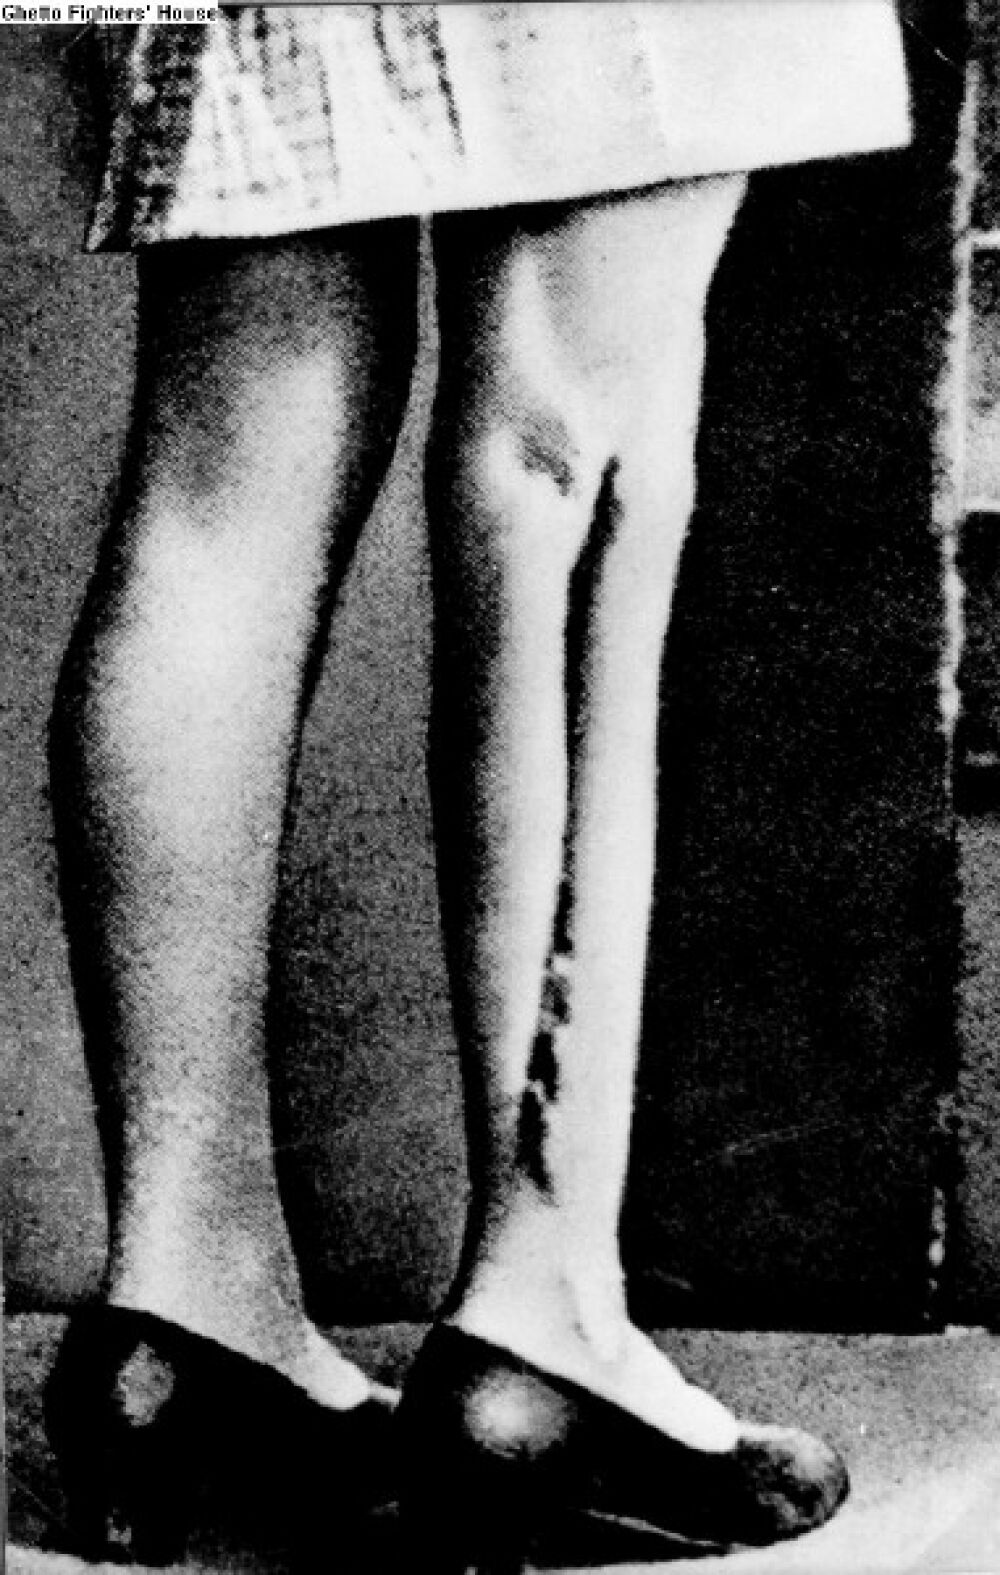 Foto verletzter Beine, an denen Ärzt/-innen Experimente vorgenommen hatten. Das Bild wurden unmittelbar nach dem Krieg aufgenommen. Zofia selbst entkam den Operationen nur knapp: Sie war für die Experimente schon vorgesehen, doch bis auf ein paar Spritzen wurde ihr kein Leid zugefügt.